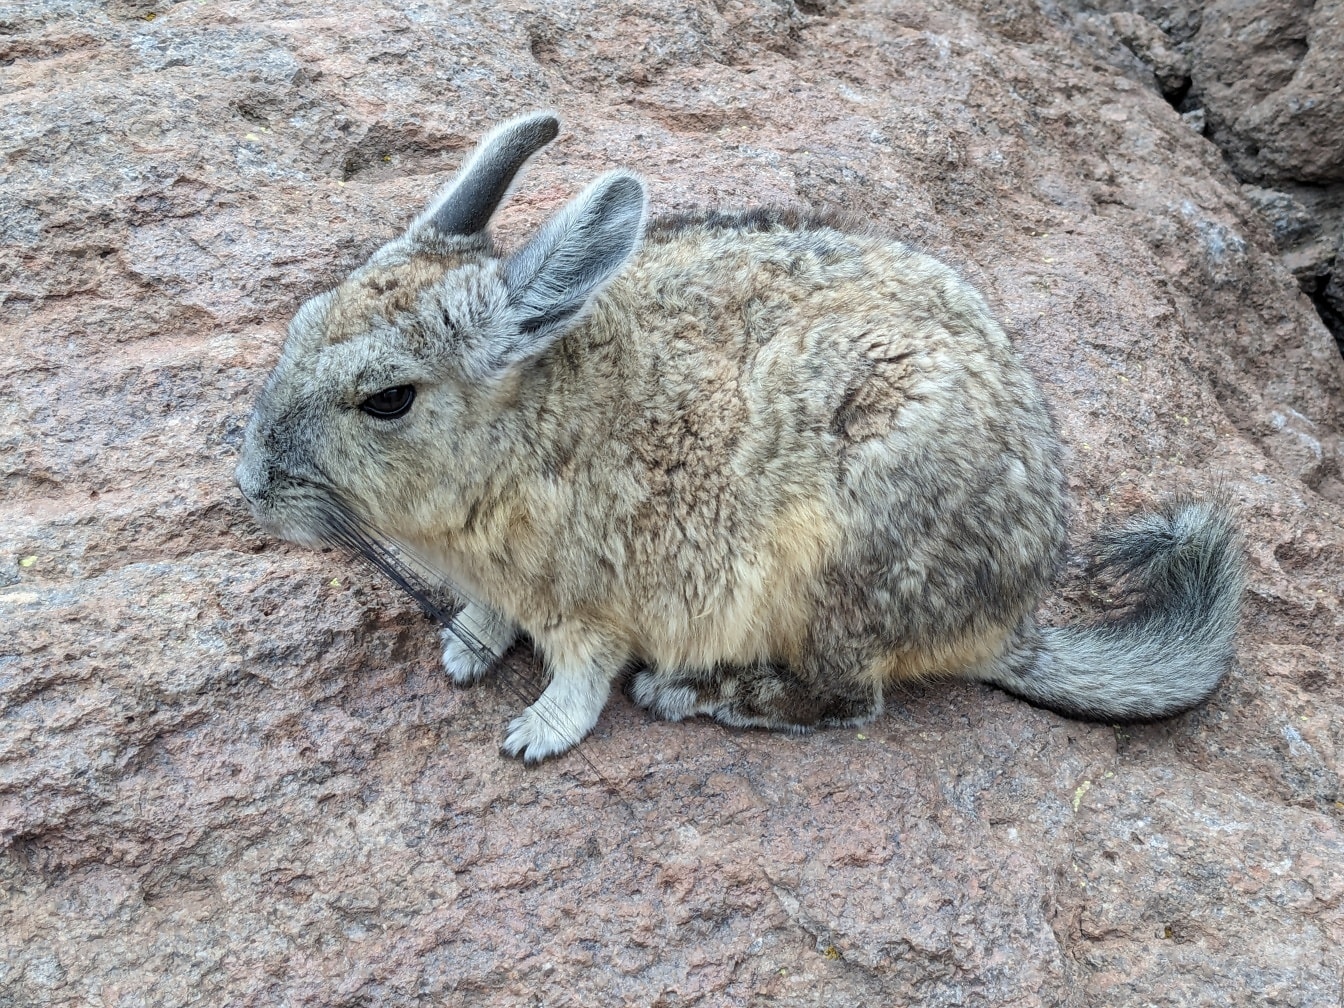 Viscacha selatan, hewan pengerat kecil asli Amerika Selatan, menyerupai kelinci (Lagidium viscacia)